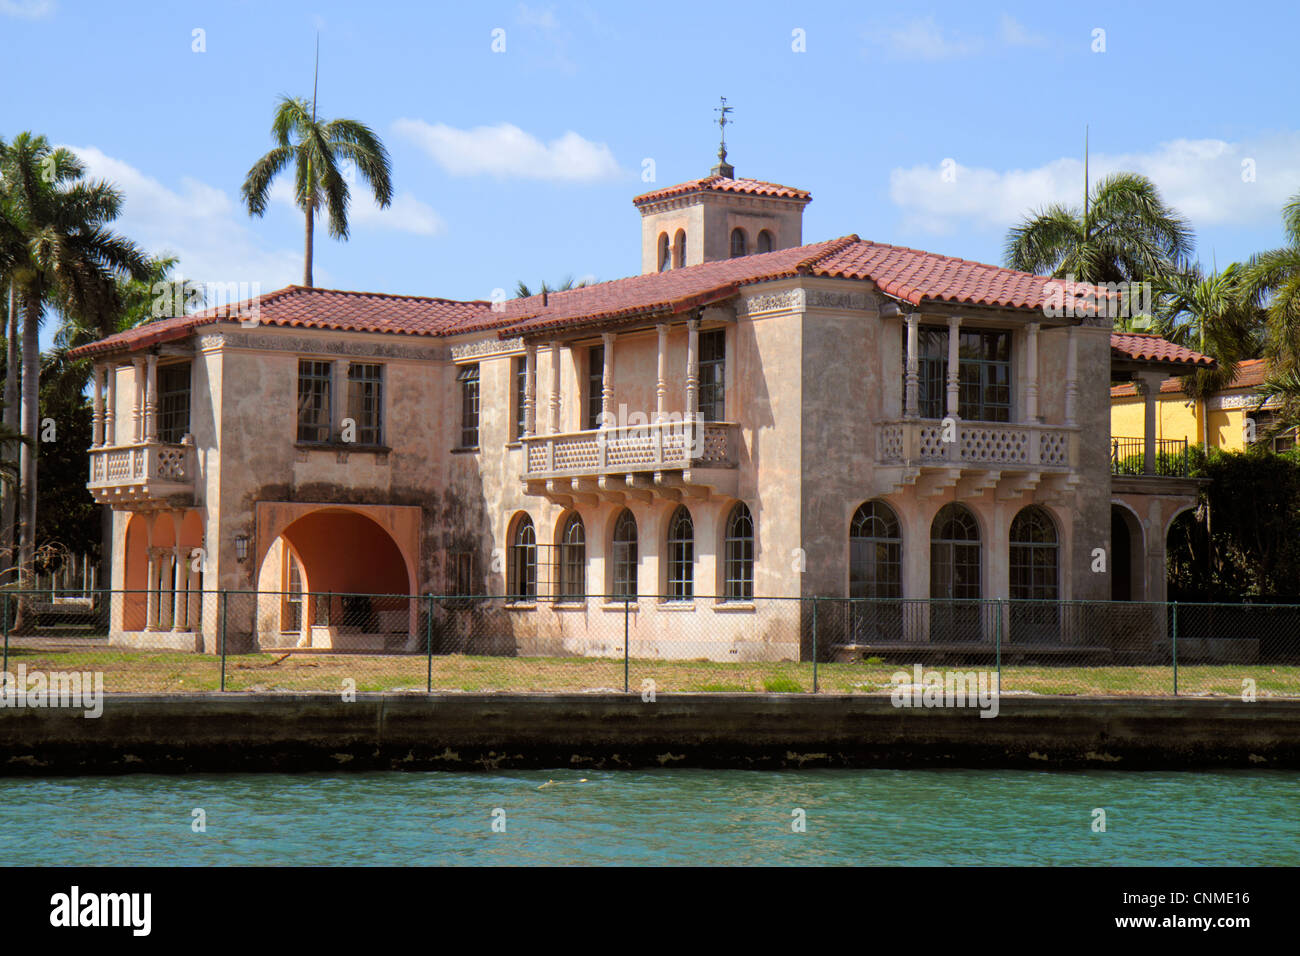 Miami Beach Florida, Biscayne Bay, Star Island, 22 Star Island Drive, maison en bord de mer, manoir, célébrité, maison la plus ancienne sur l'île, FL120331121 Banque D'Images